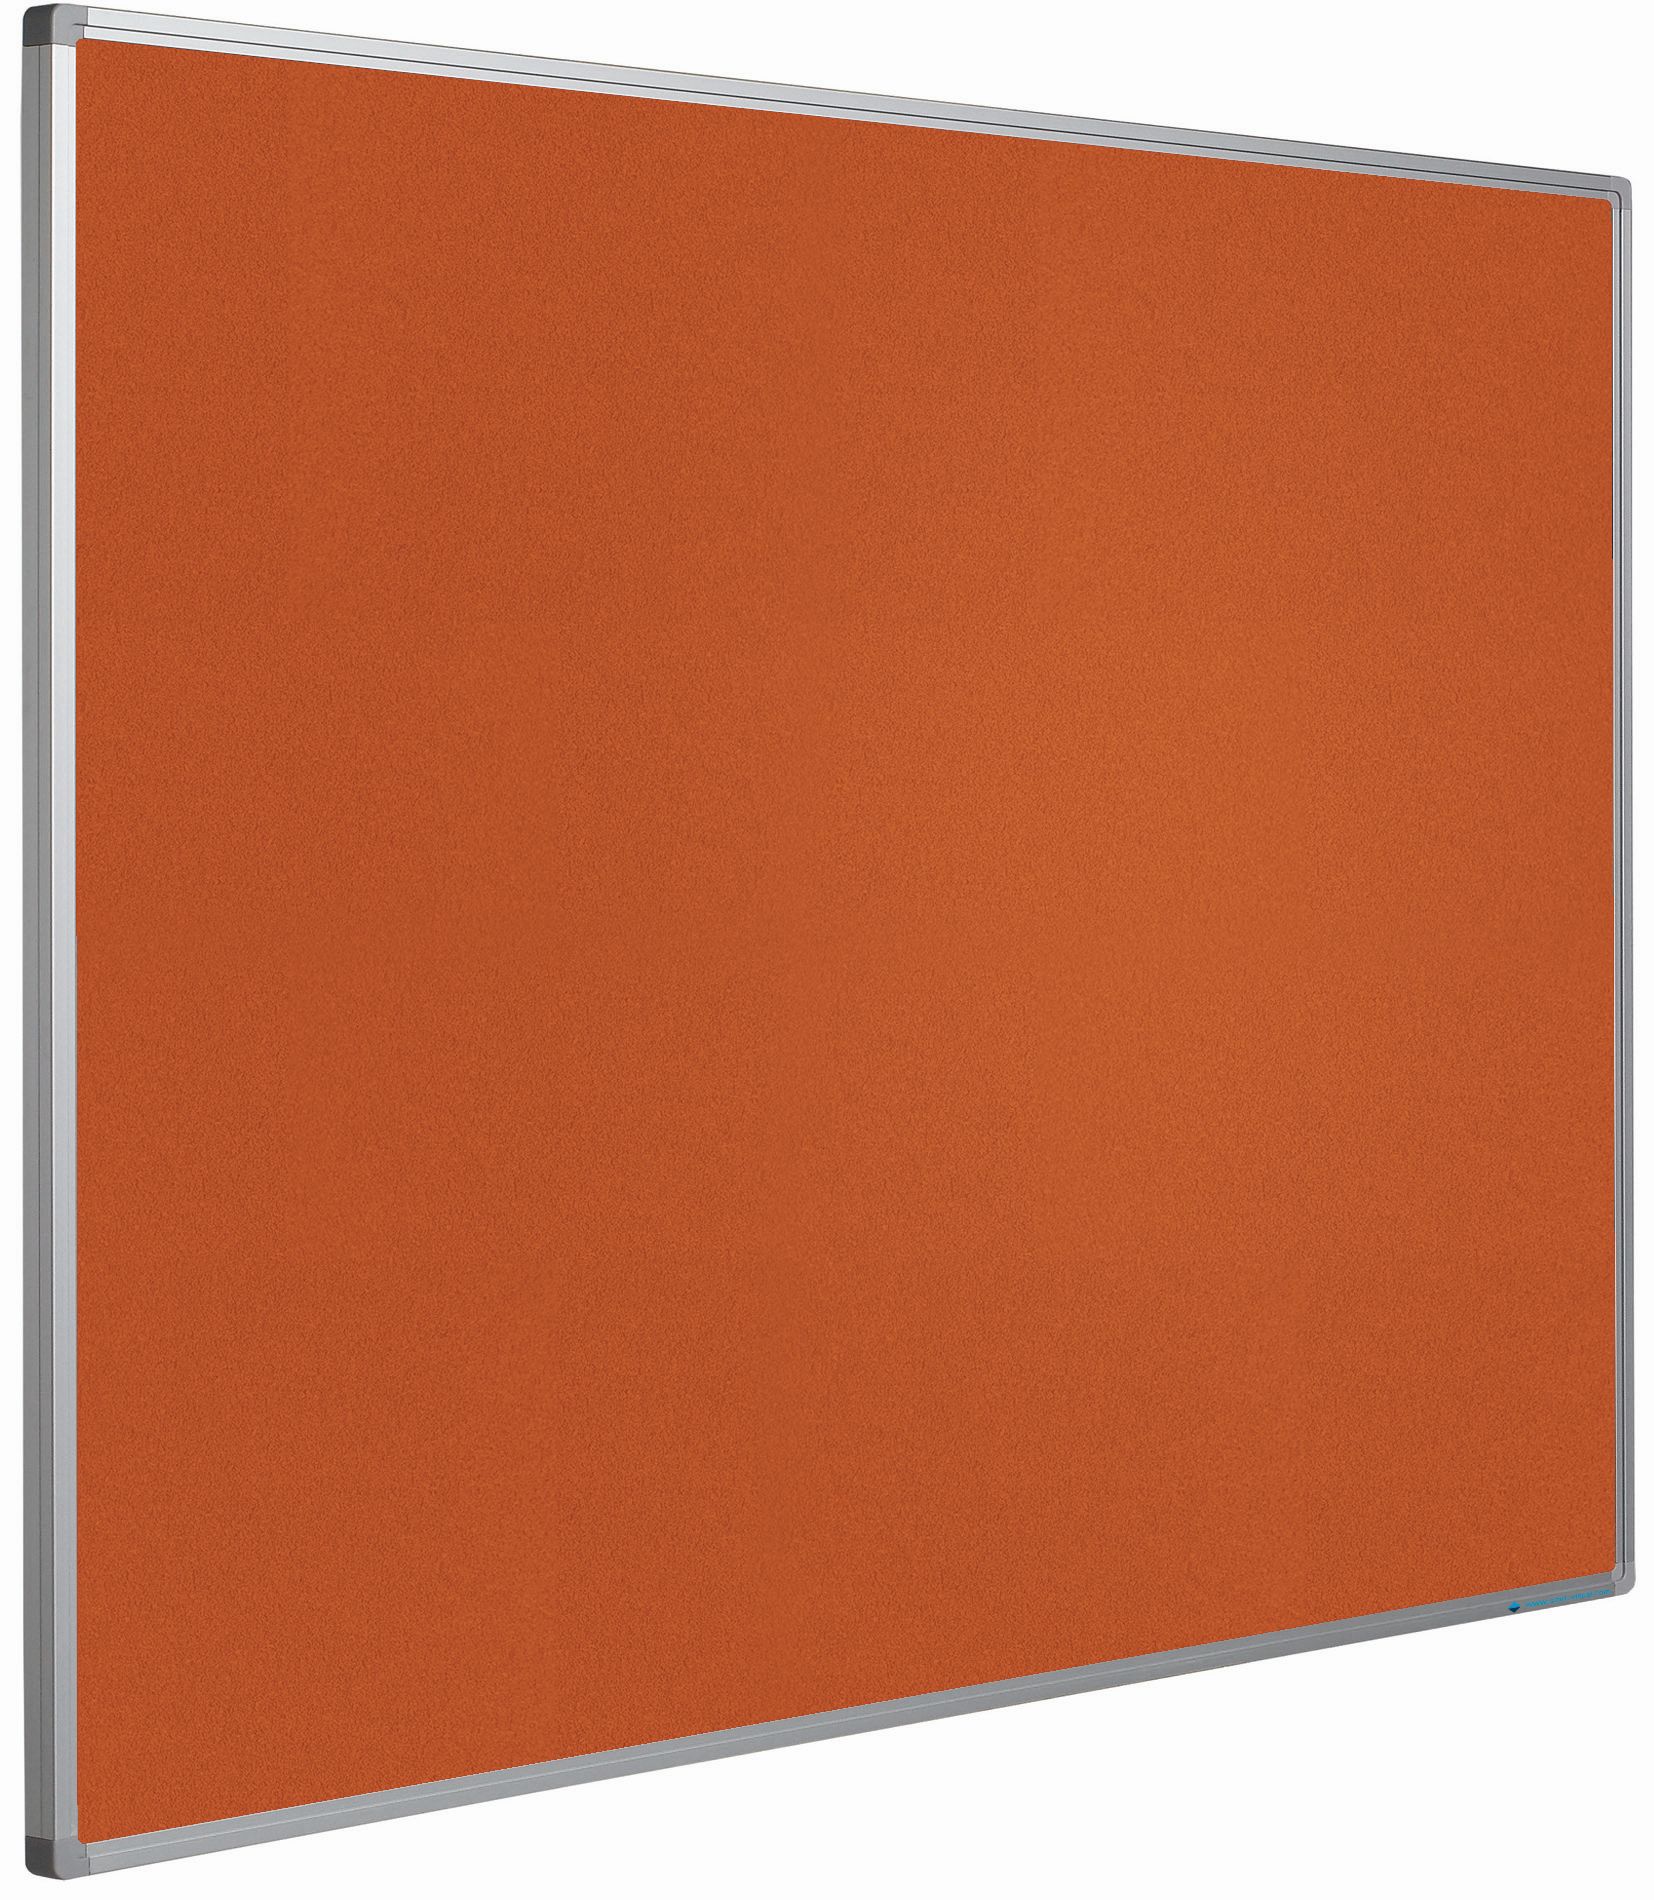 Prikbord Softline profiel 16mm, bulletin oranje - 120x180 cm